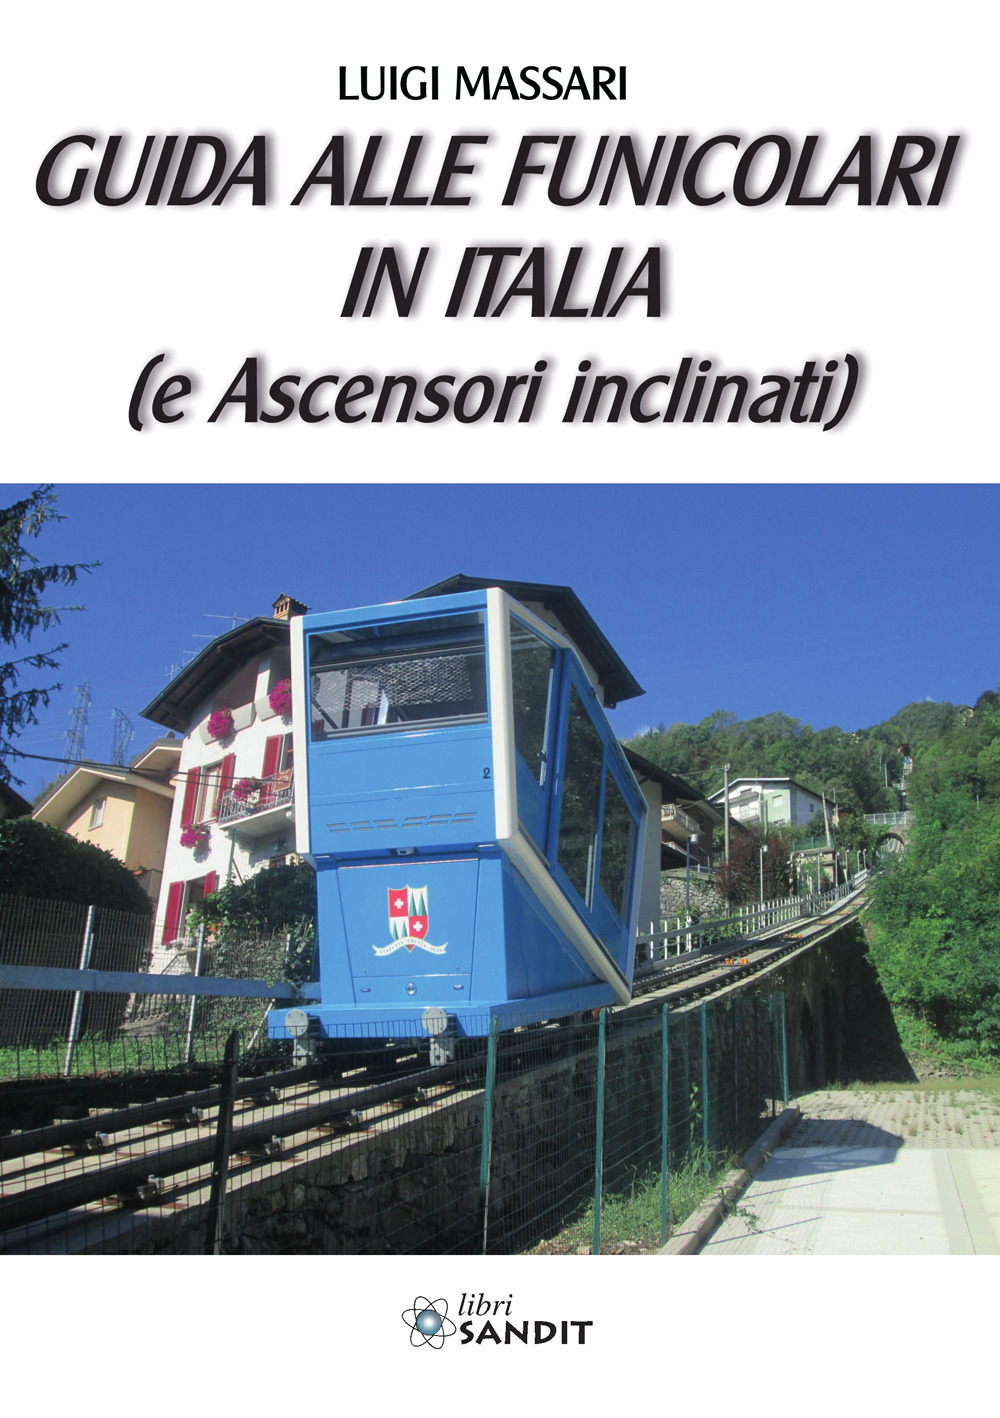 Guida alle funicolari in Italia (e ascensori inclinati)